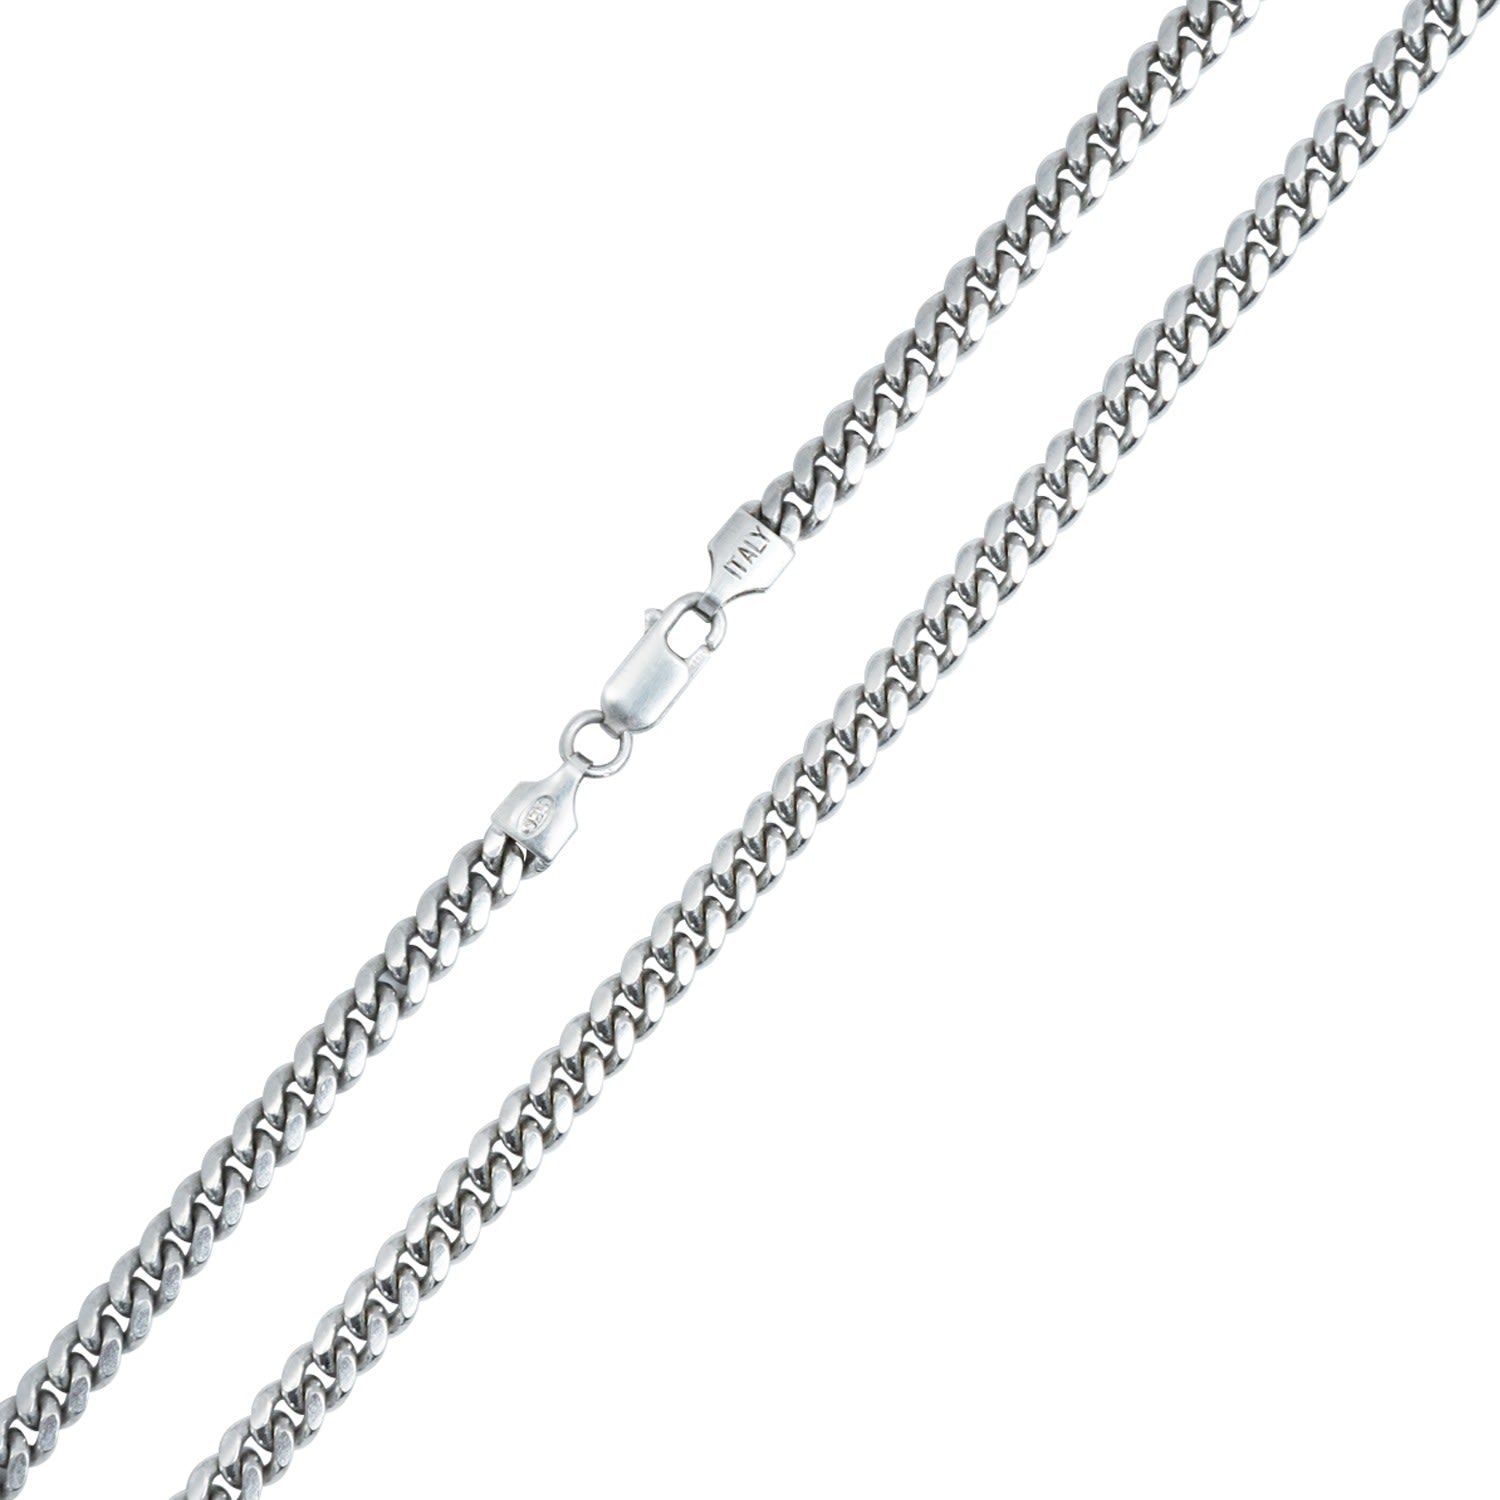 5mm Miami Curb Chain Rhodium Finish Necklace